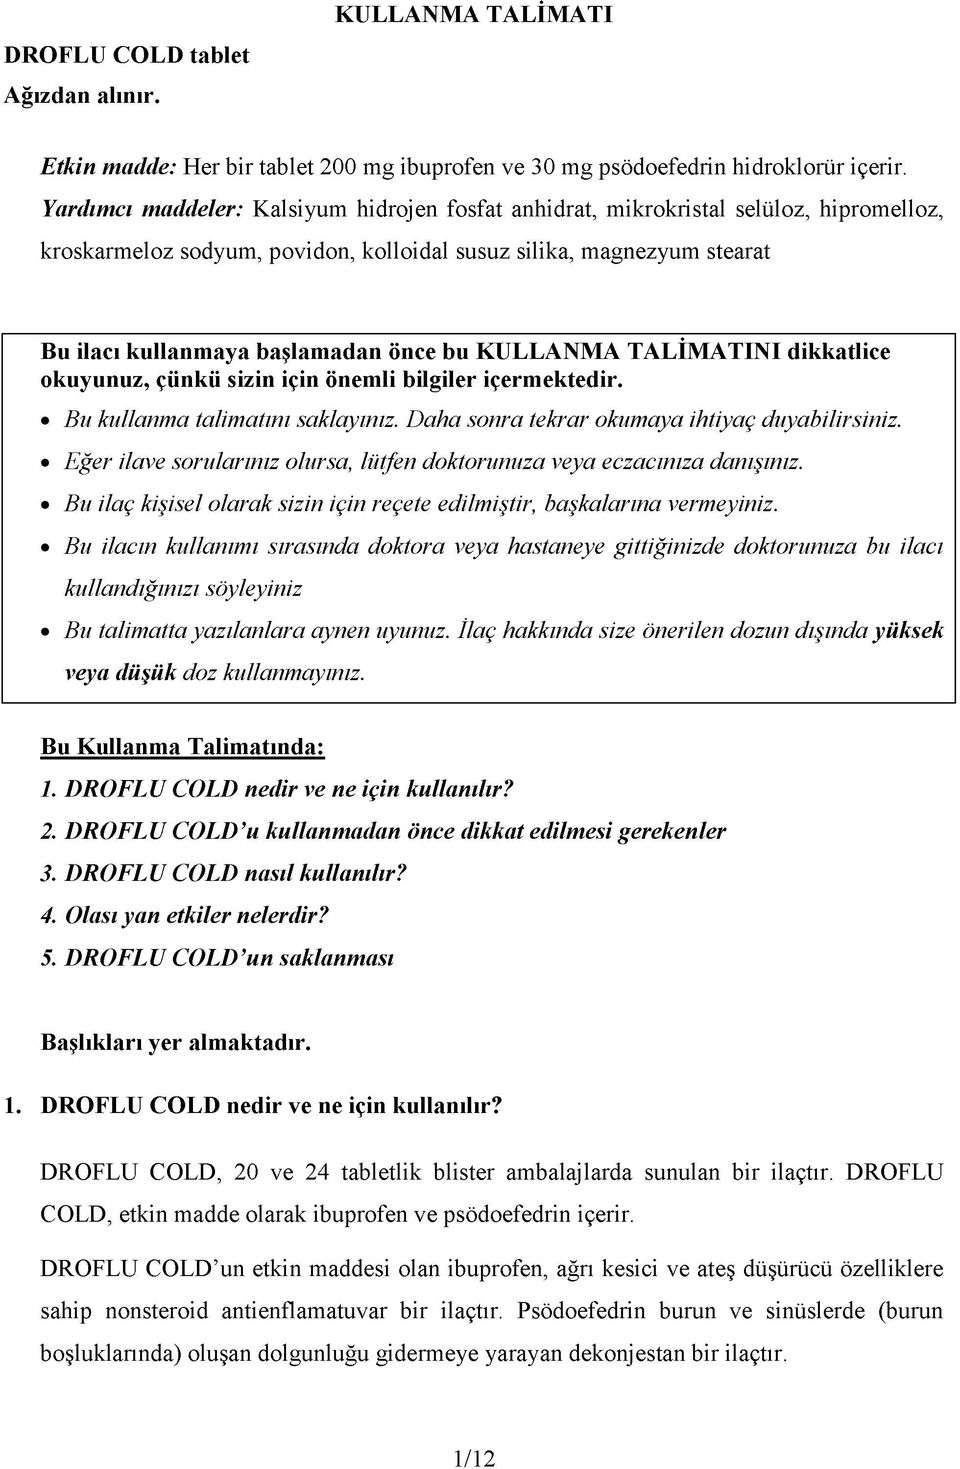 KULLANMA TALİMATI. DROFLU COLD tablet Ağızdan alınır. - PDF Free Download